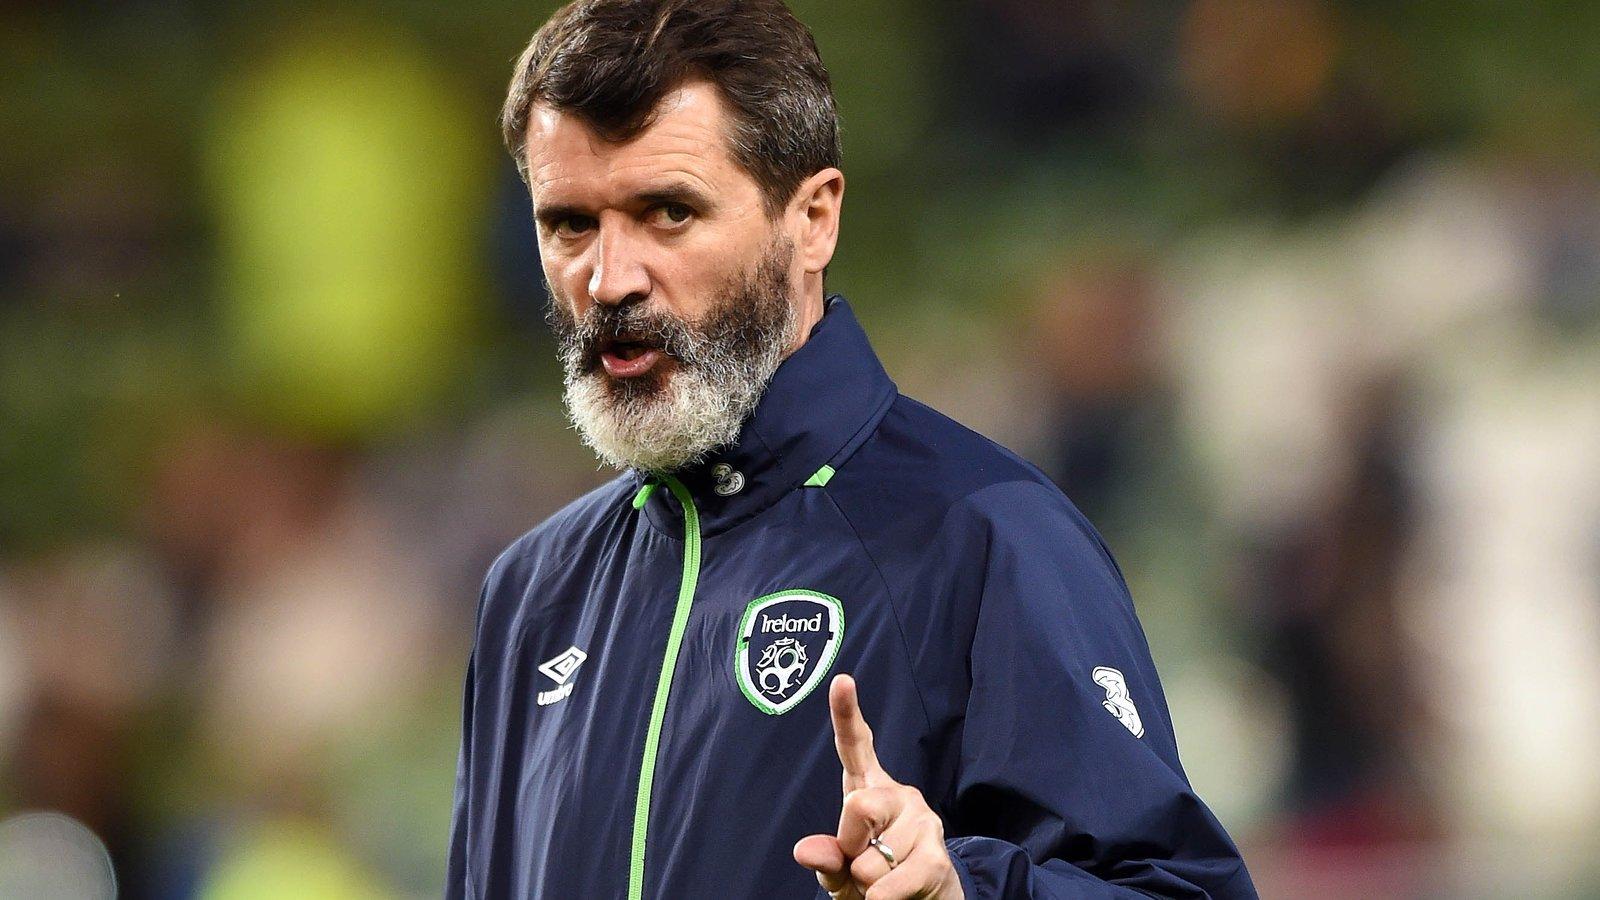 Roy Keane on 'irritating' Jose Mourinho